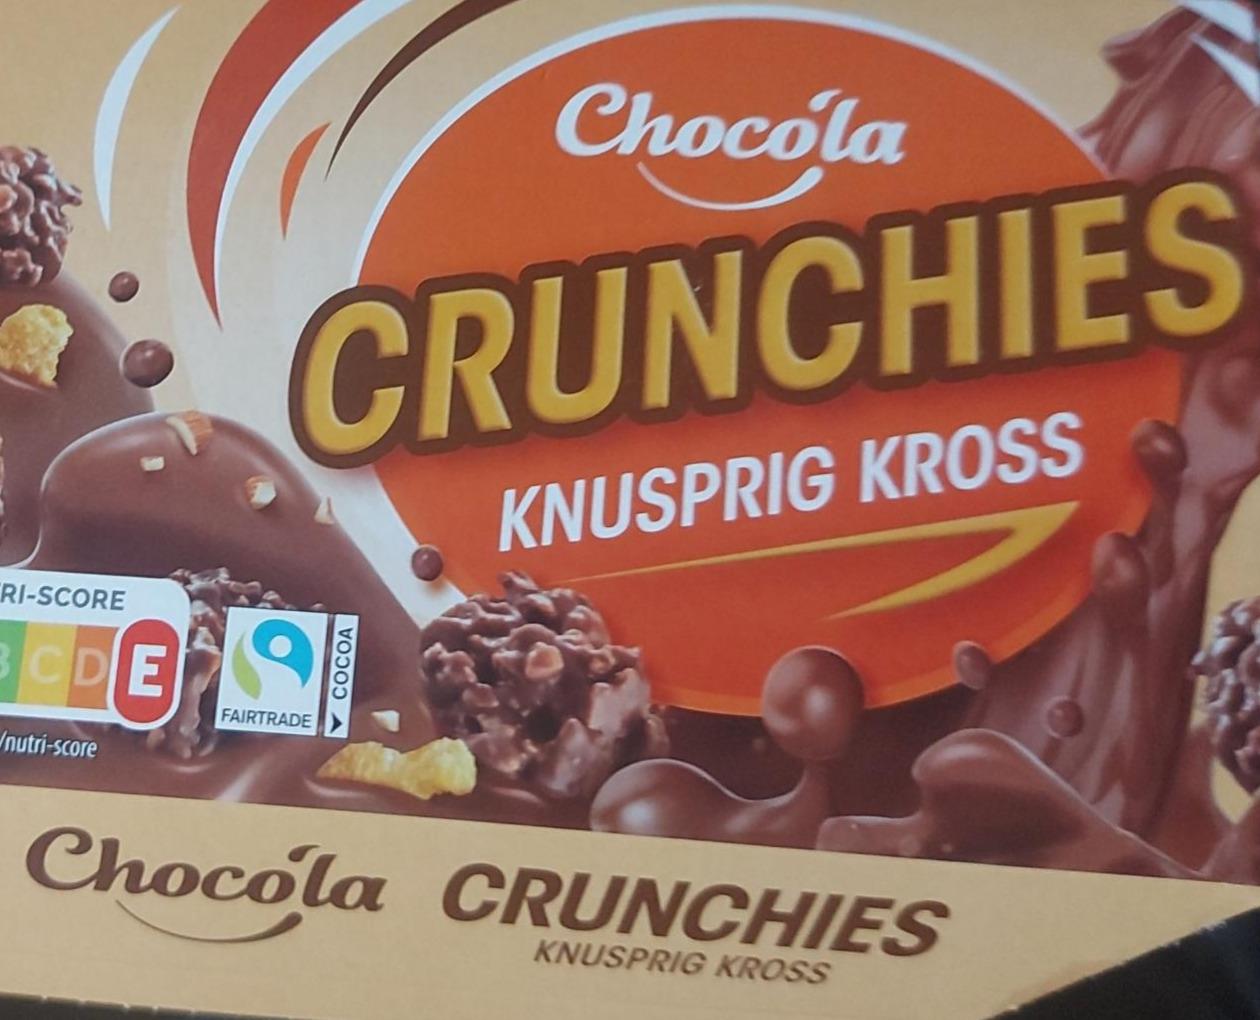 Zdjęcia - Crunchies knusprig kross Chocola